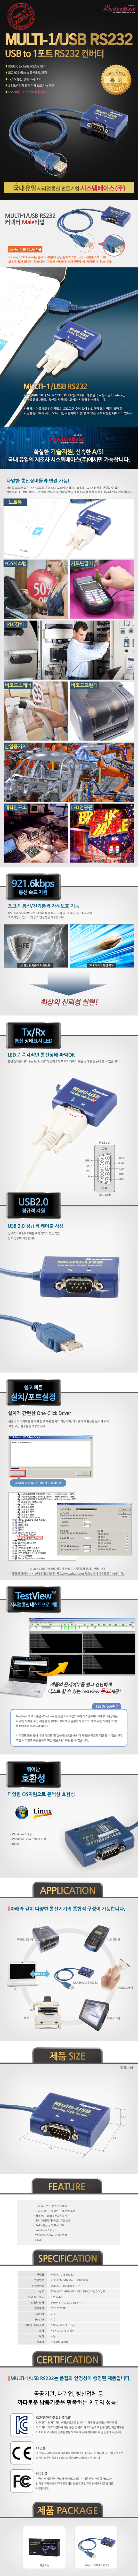 Multi1_USB_RS232_OFFICIAL_103331.jpg